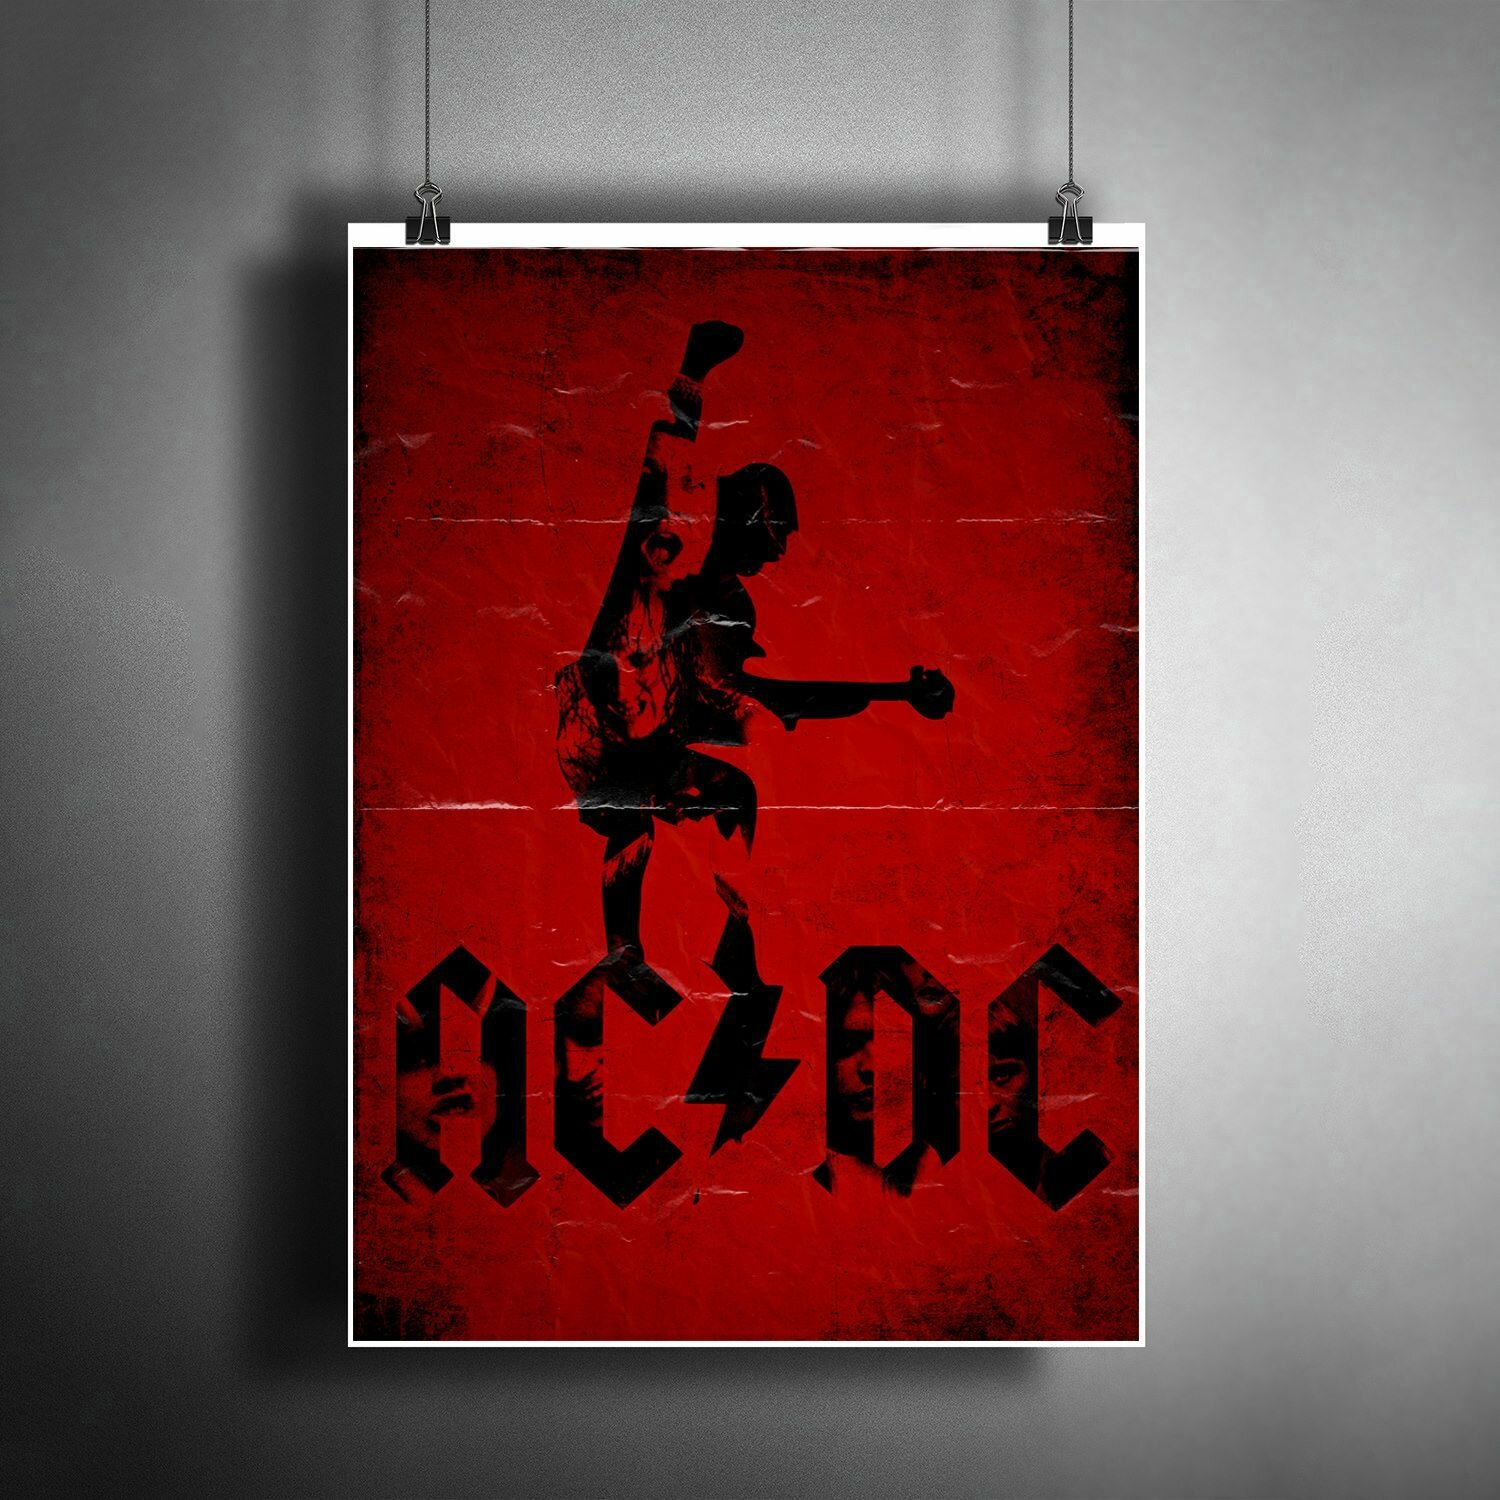 Постер плакат для интерьера "Музыка: Австралийская рок-группа AC/DC" / Декор дома, офиса, комнаты, квартиры, детской A3 (297 x 420 мм)